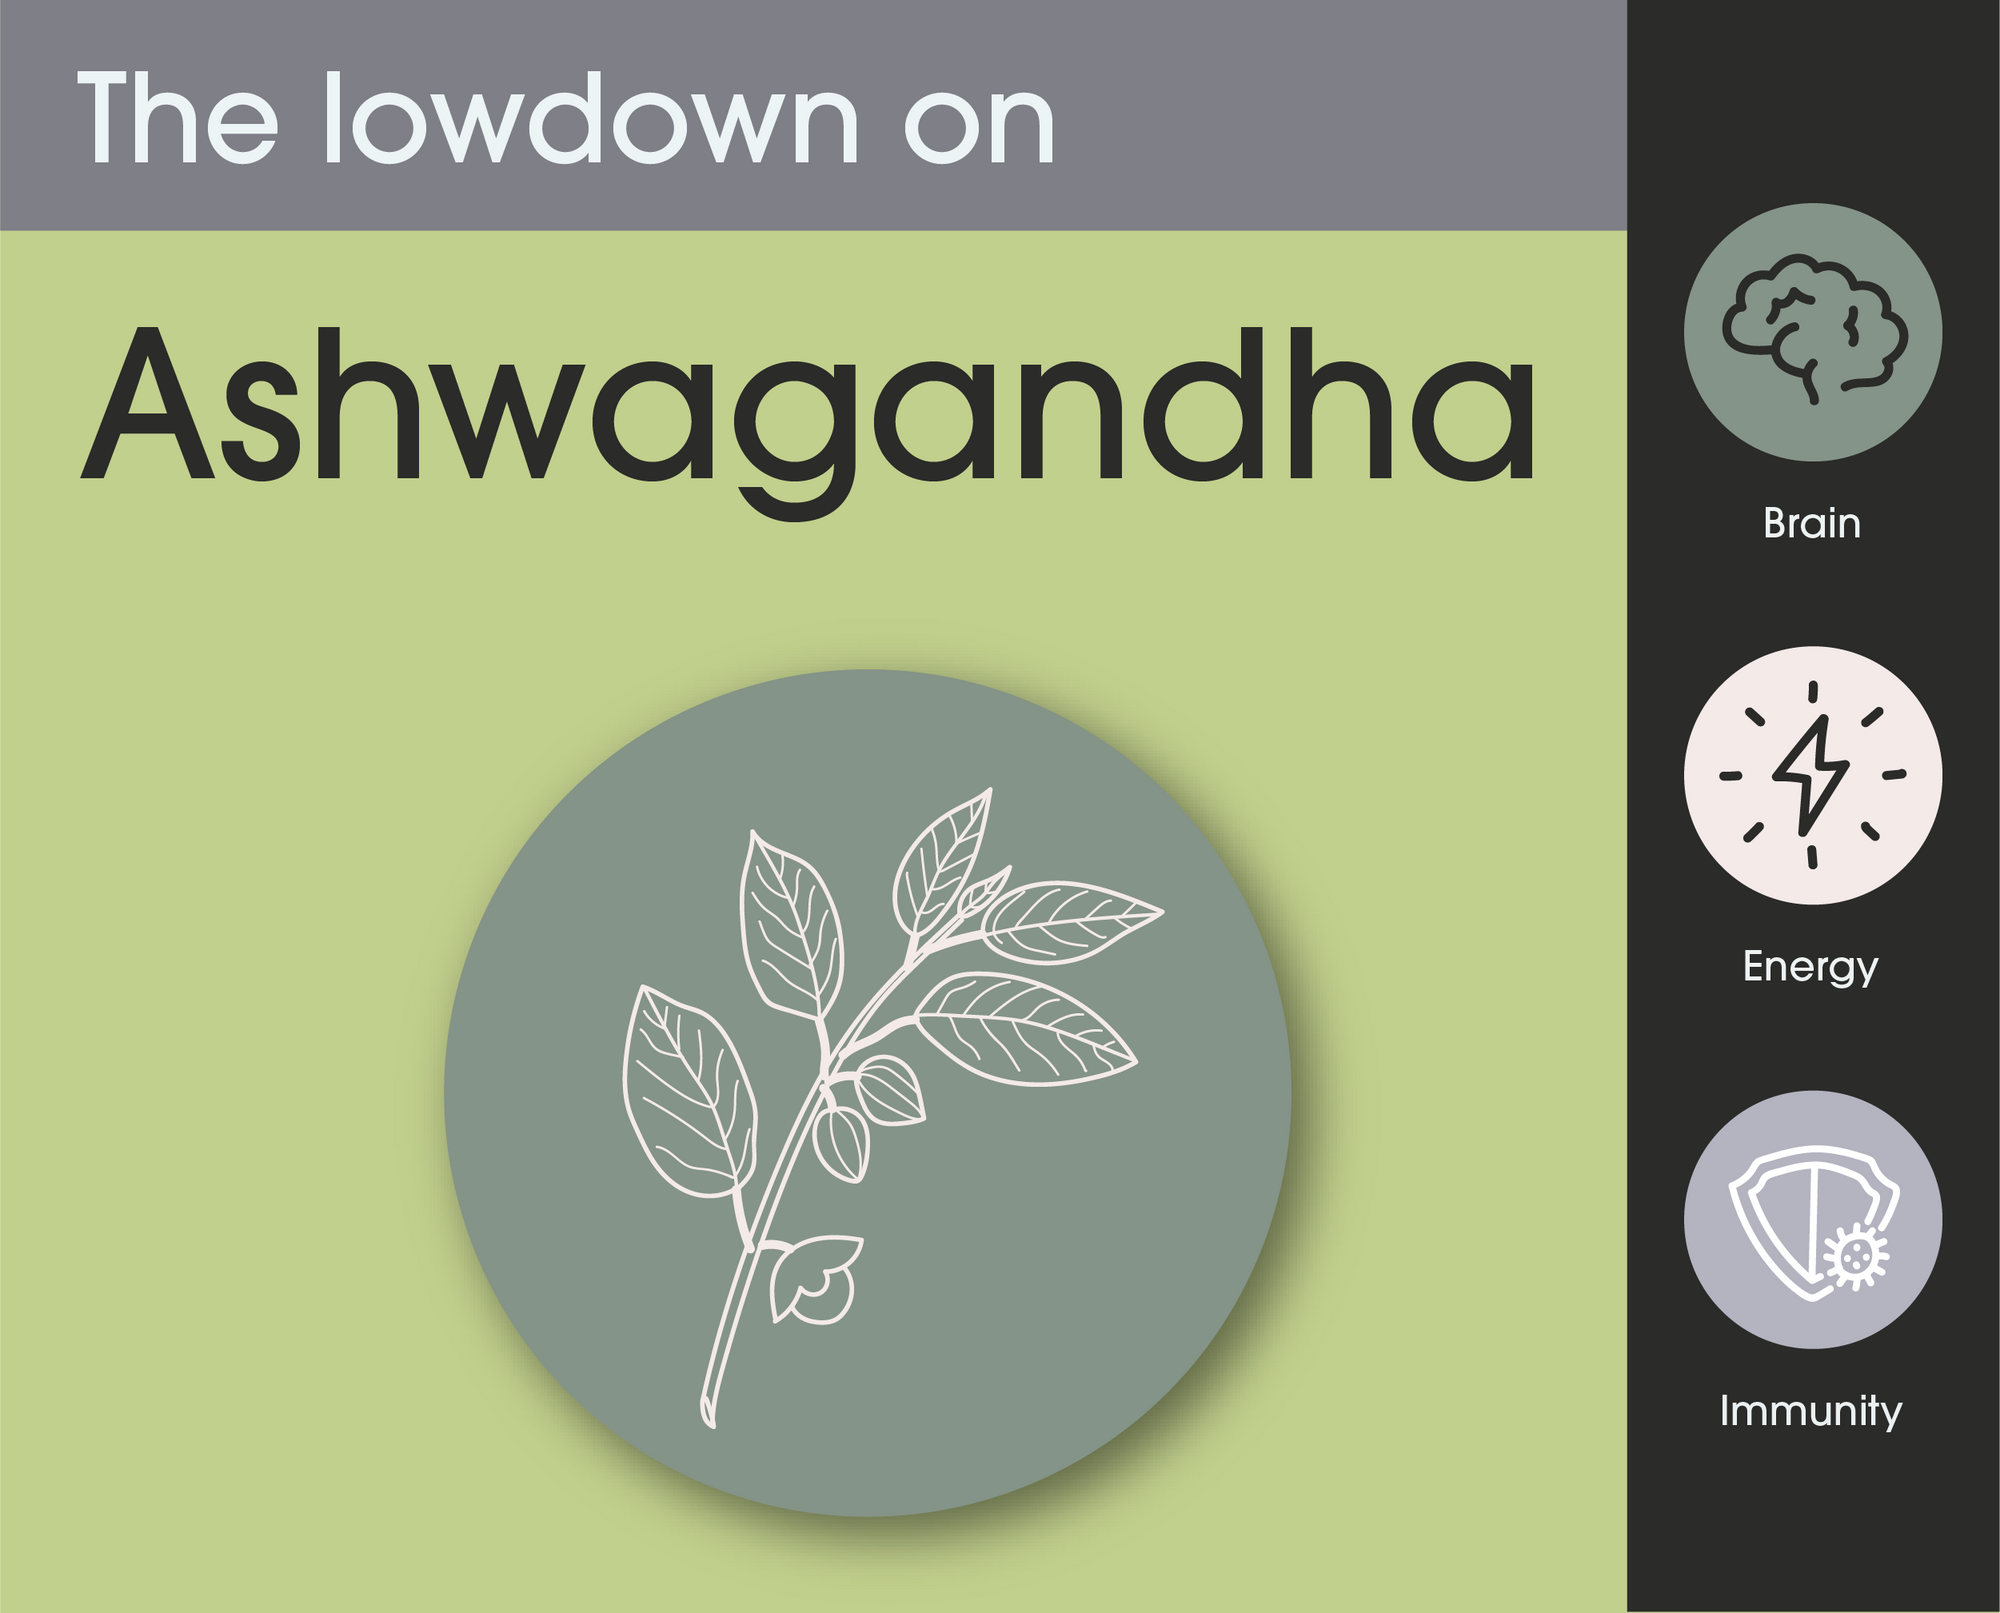 The lowdown on Ashwagandha